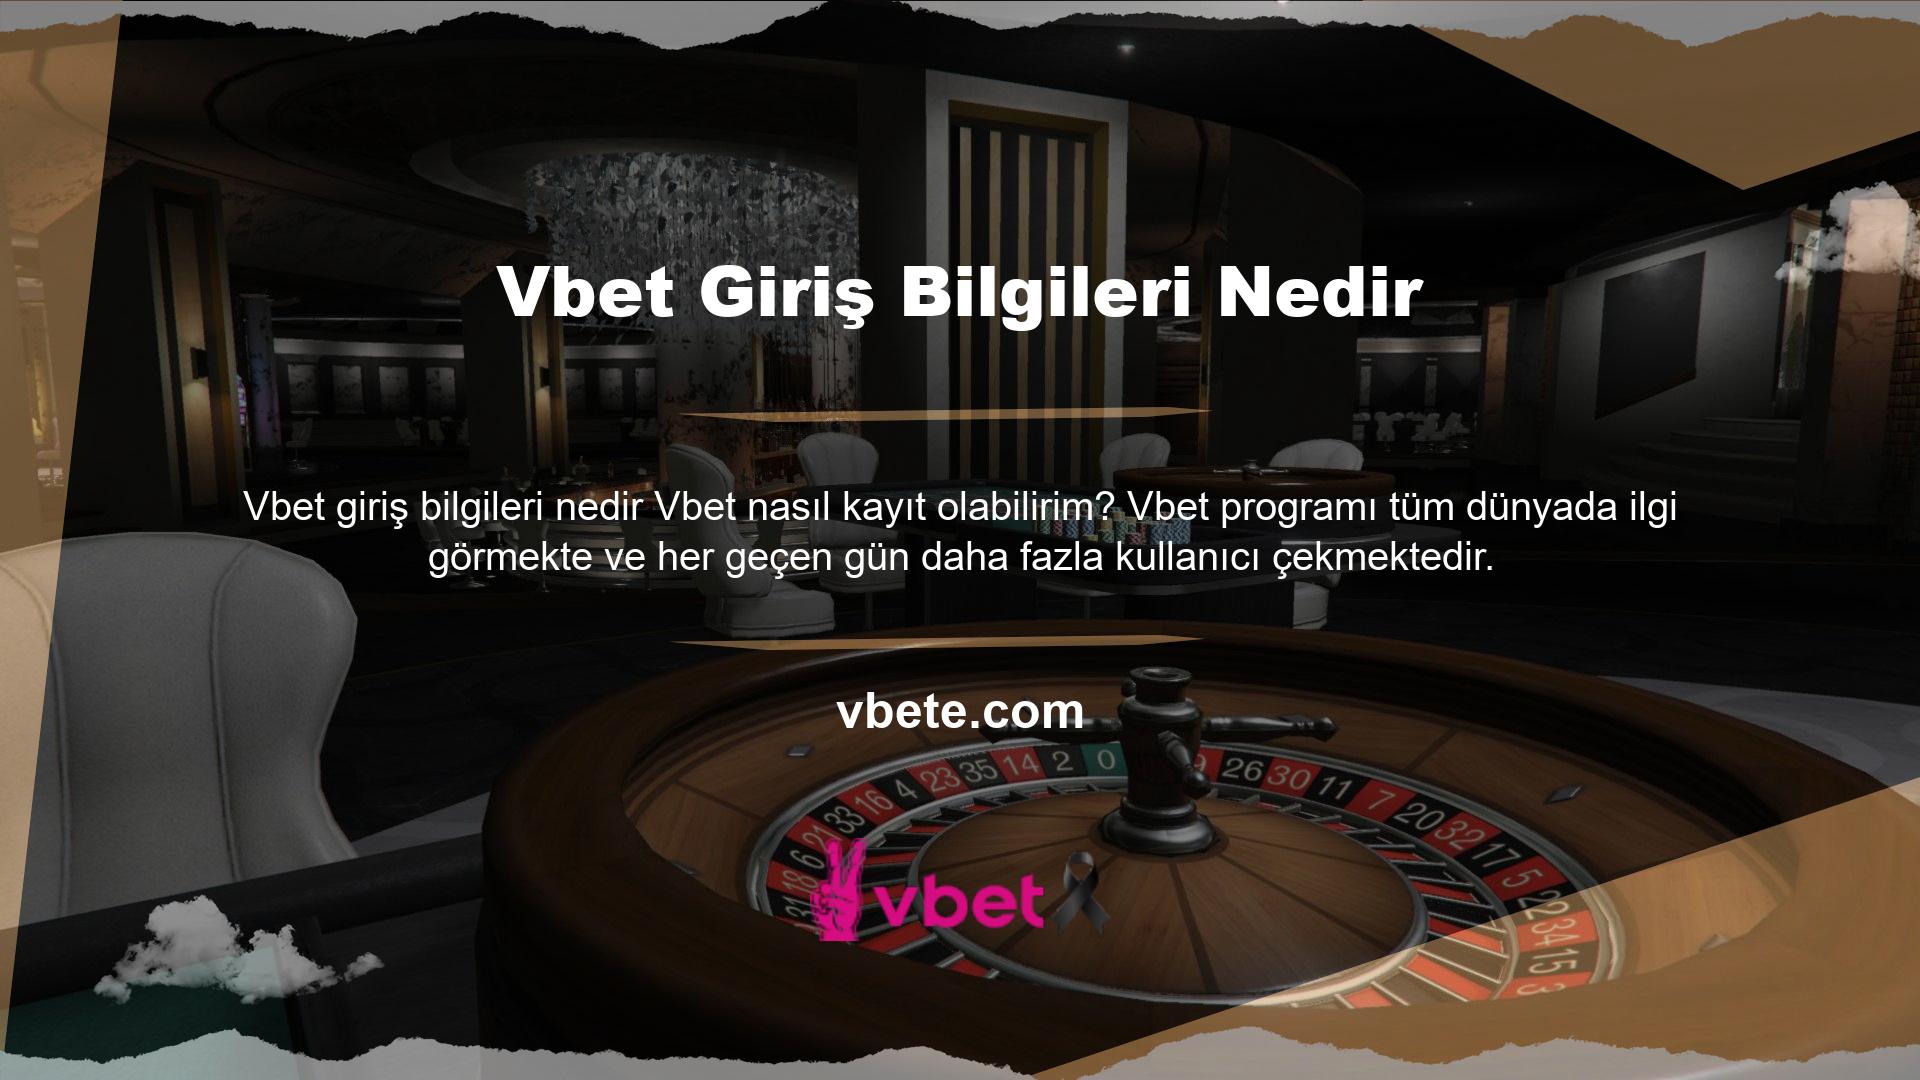 Türkiye'de onlarca Vbet sitesi açıldı ve giderek kullanıcıların ilgisini çekti